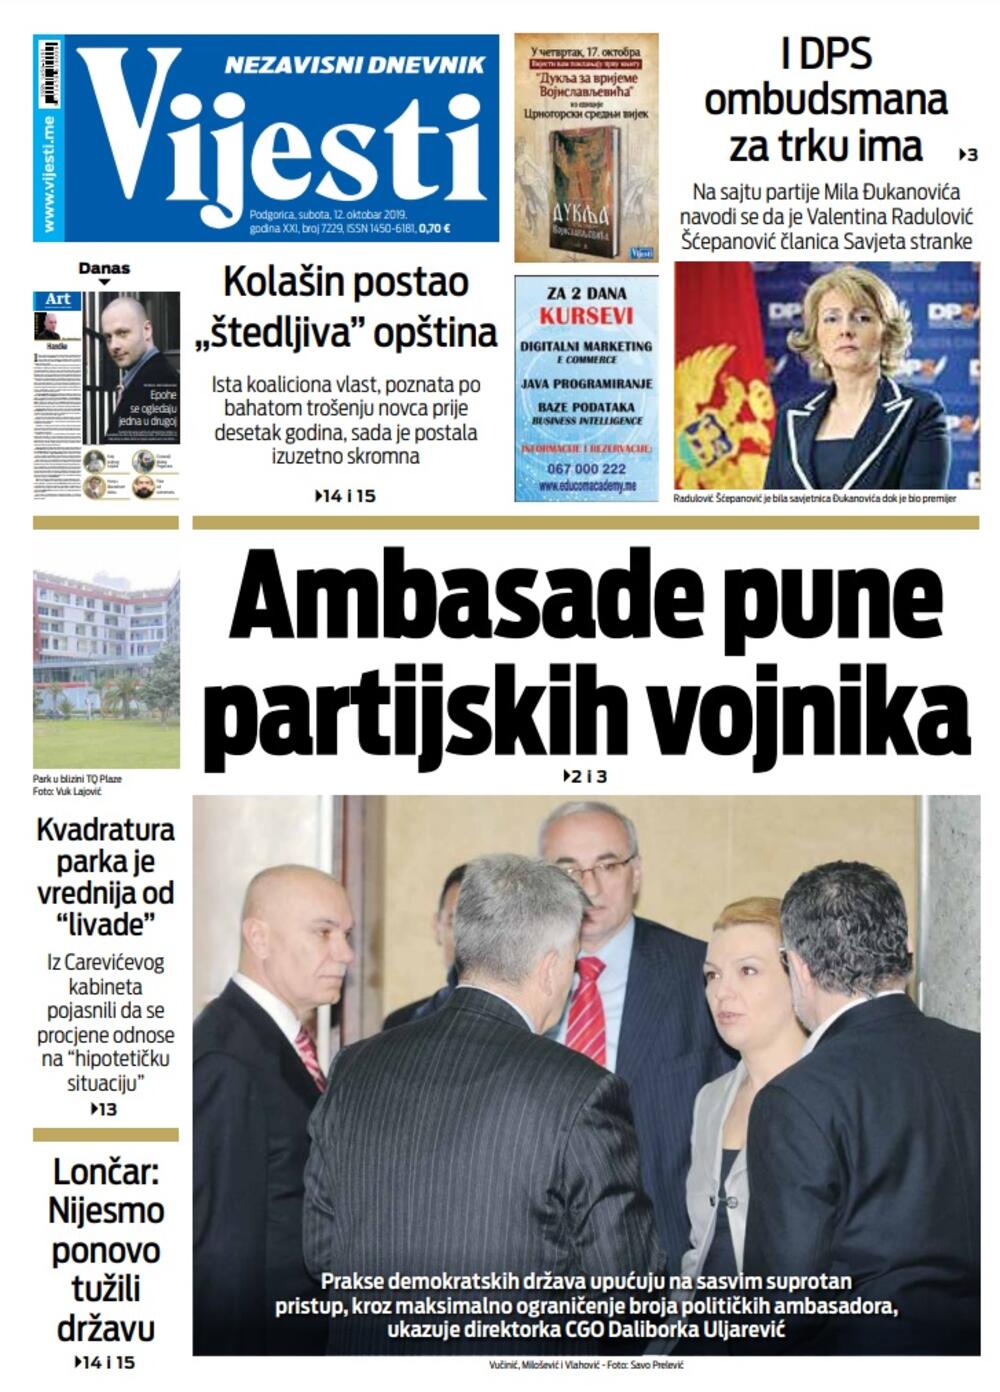 Naslovna strana "Vijesti" za 12. oktobar 2019. godine, Foto: Vijesti